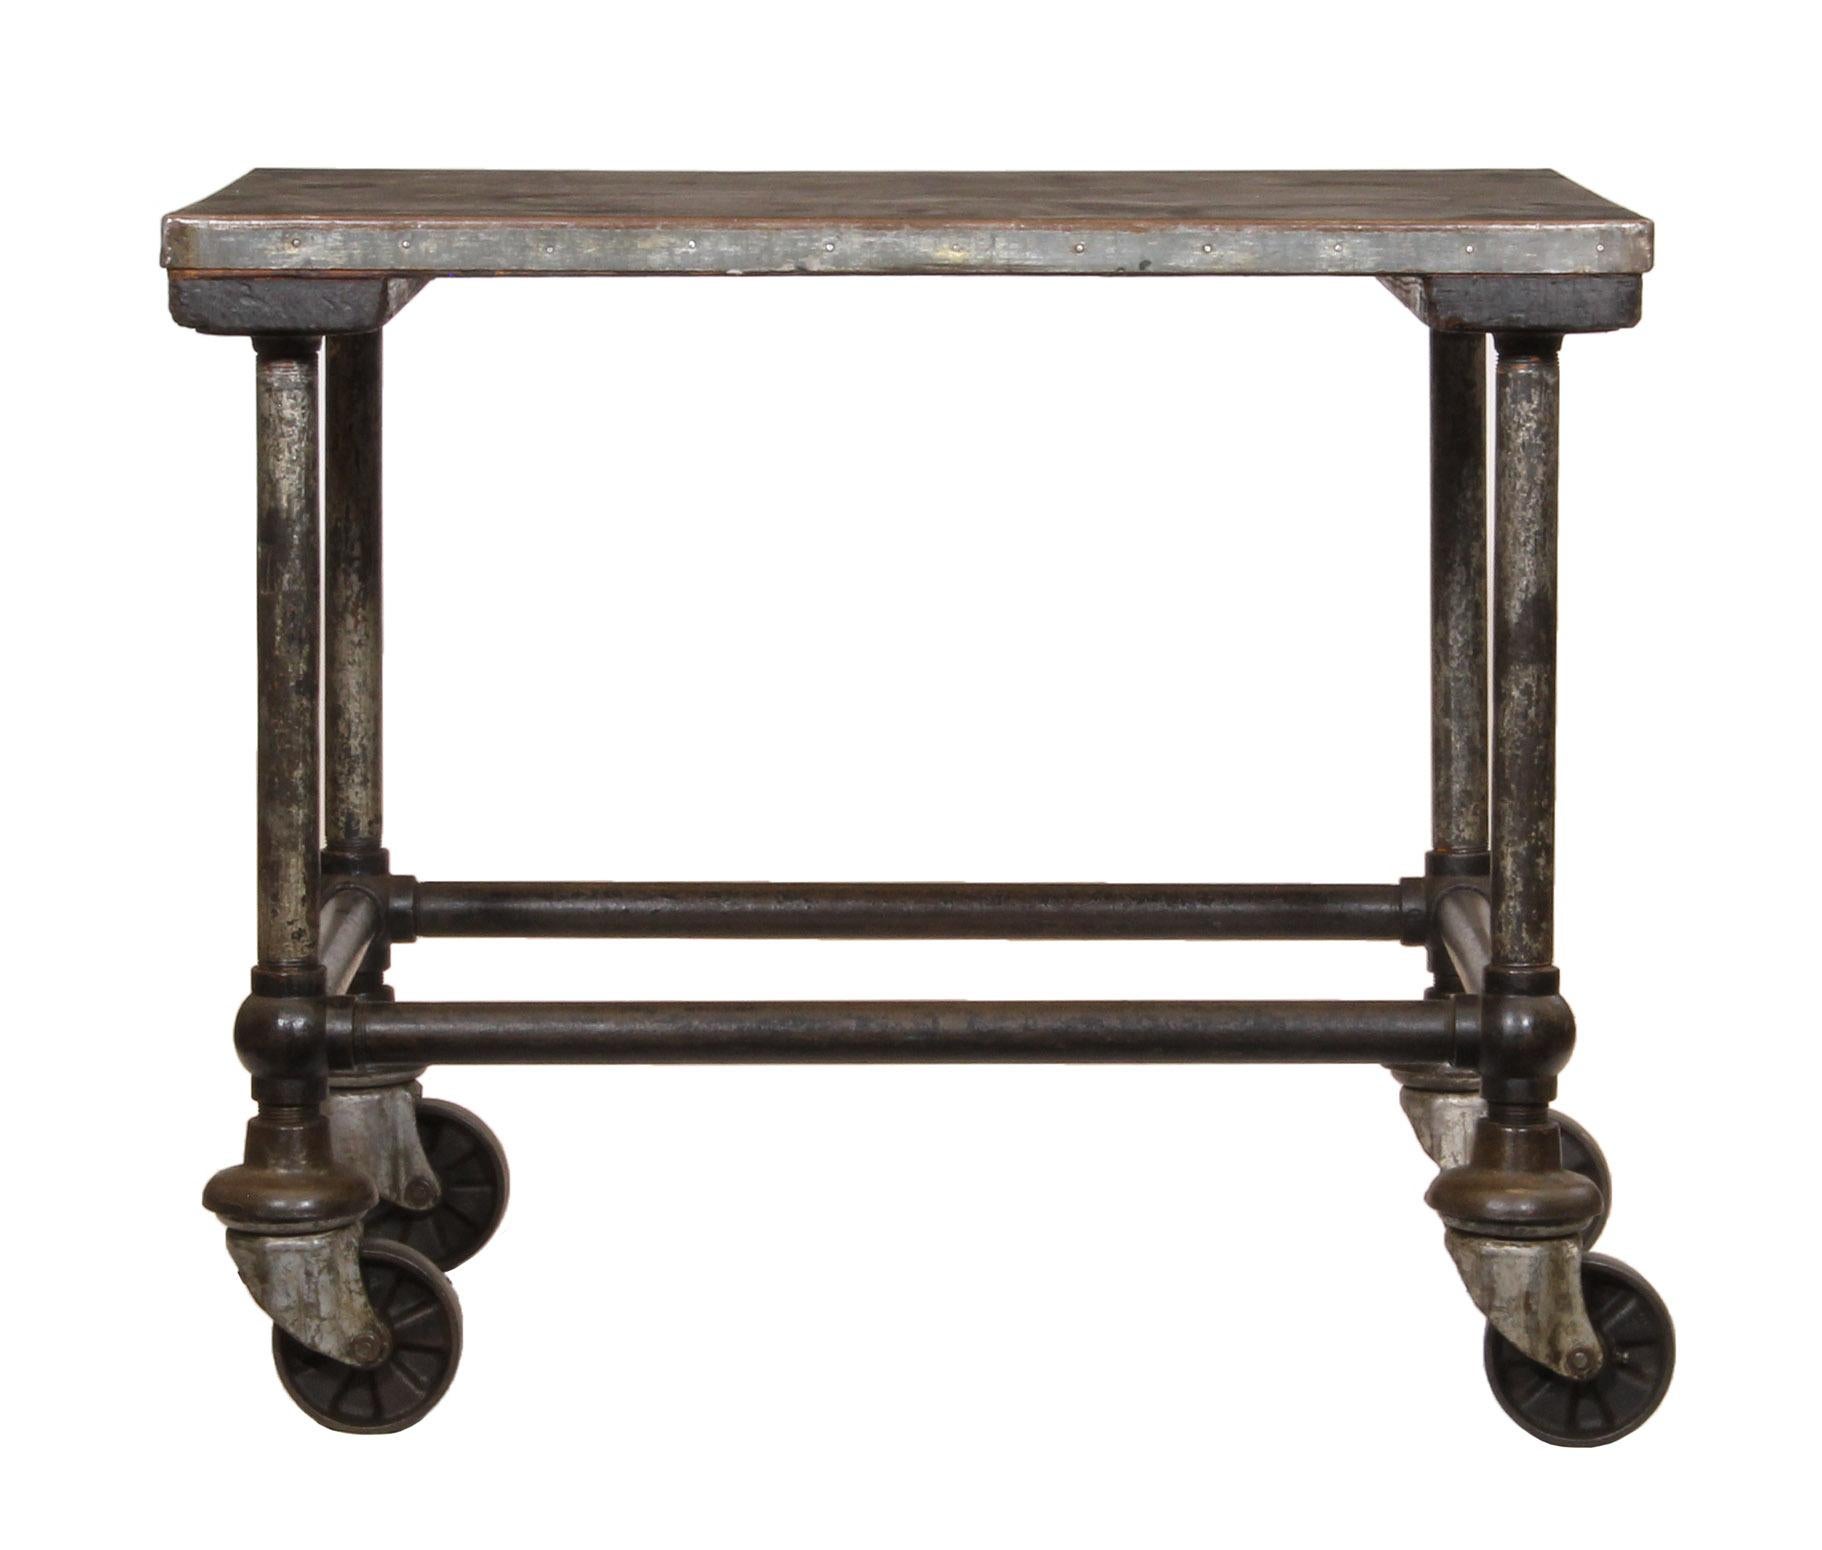 Vintage industrial low steel top cart/table.